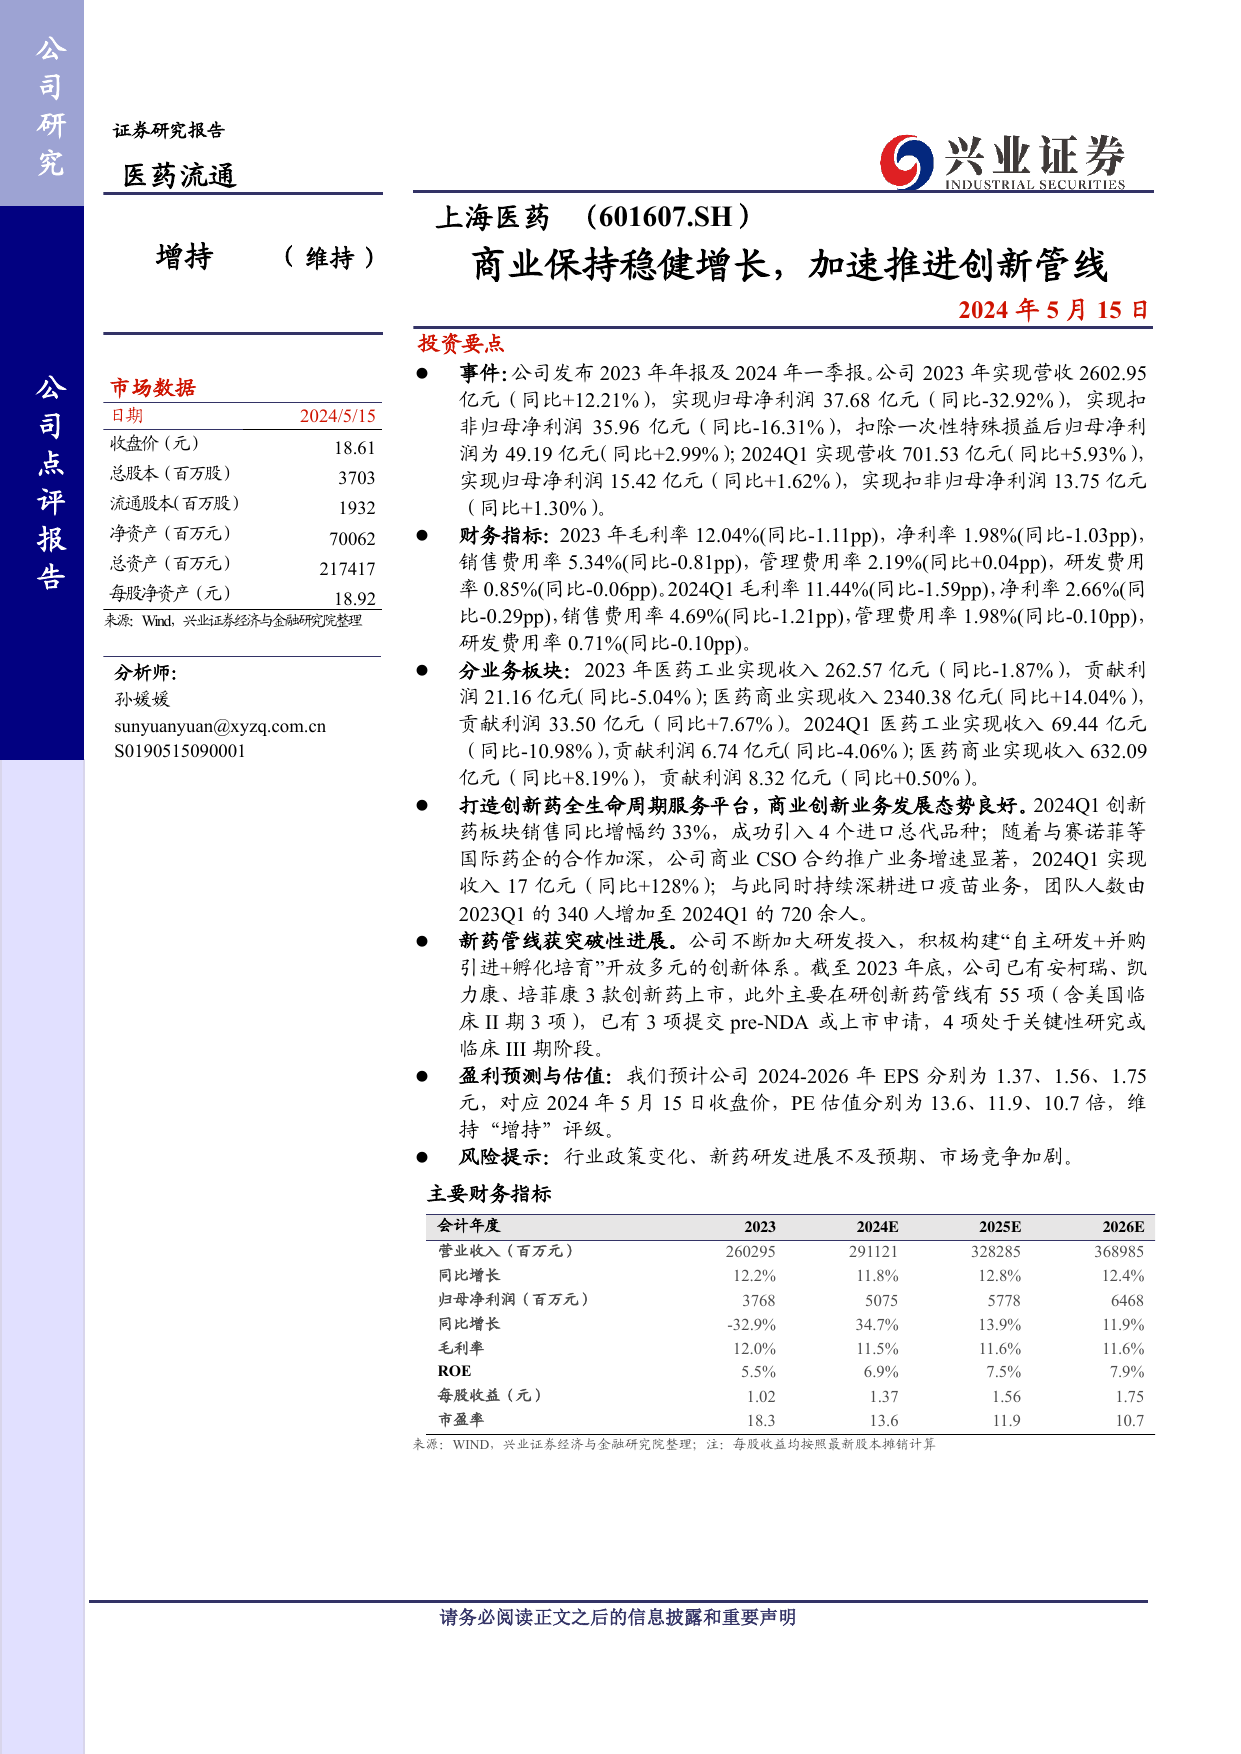 上海医药(601607)商业保持稳健增长，加速推进创新管线.pdf